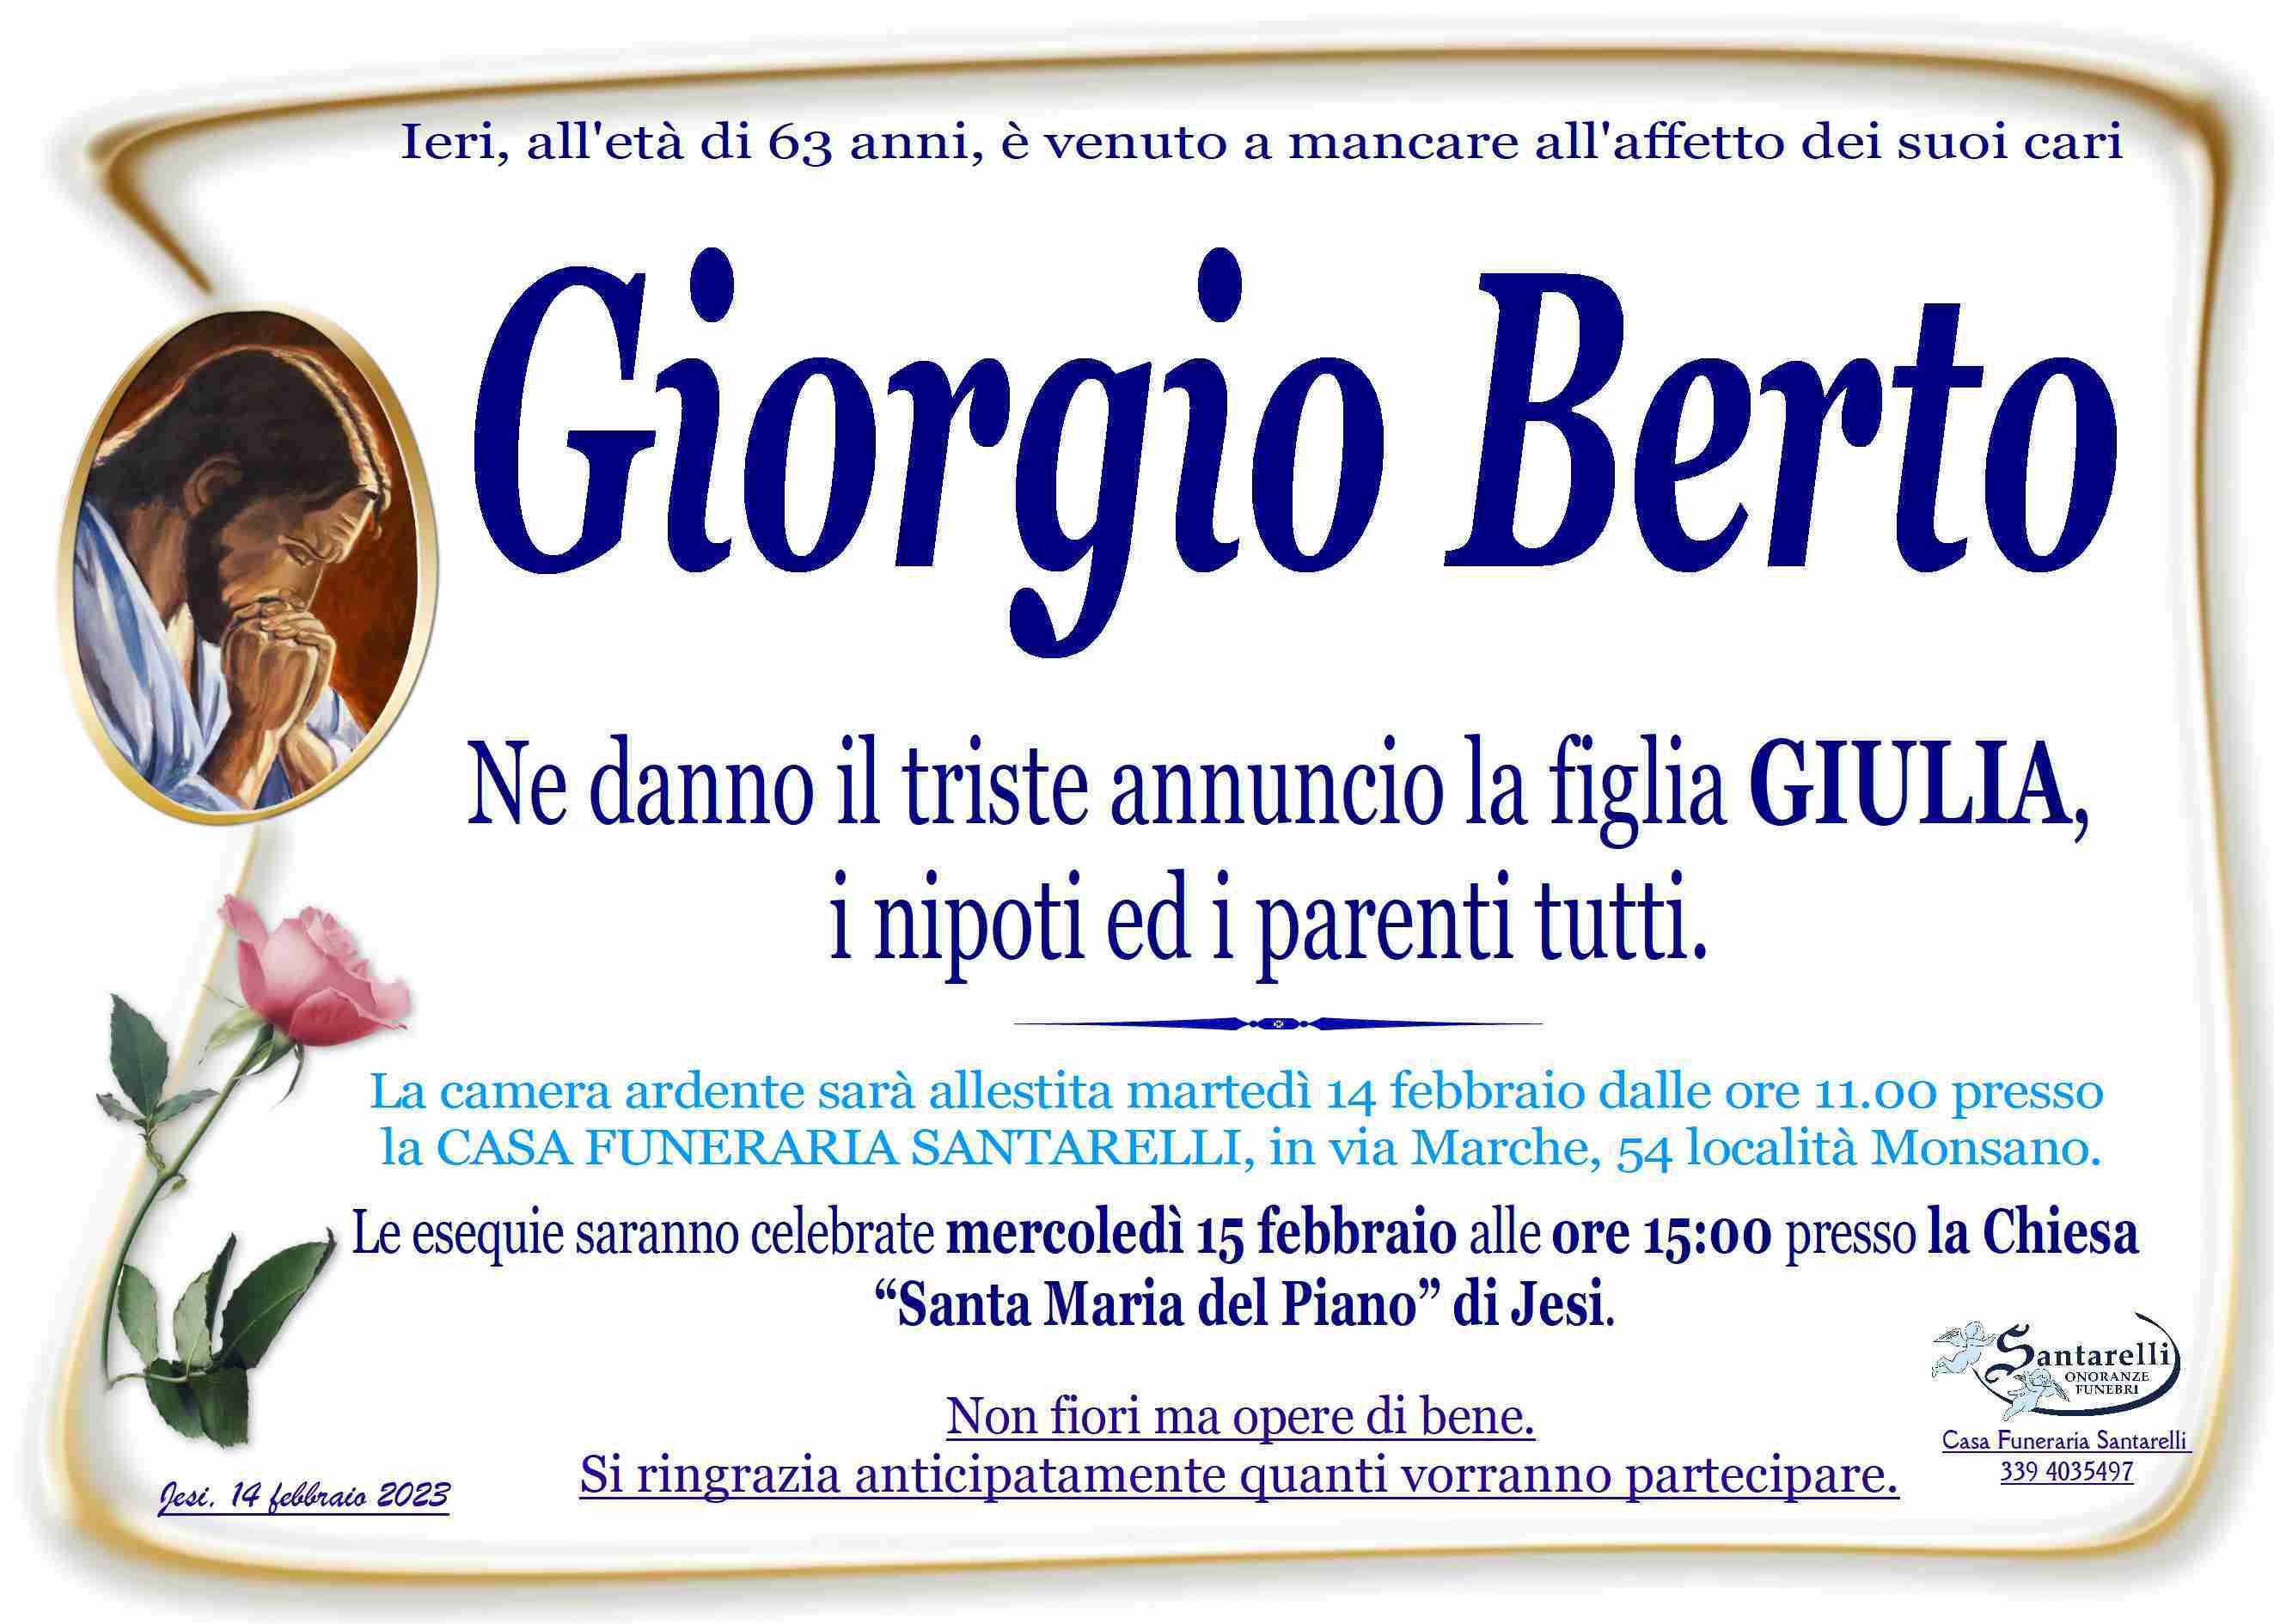 Giorgio Berto